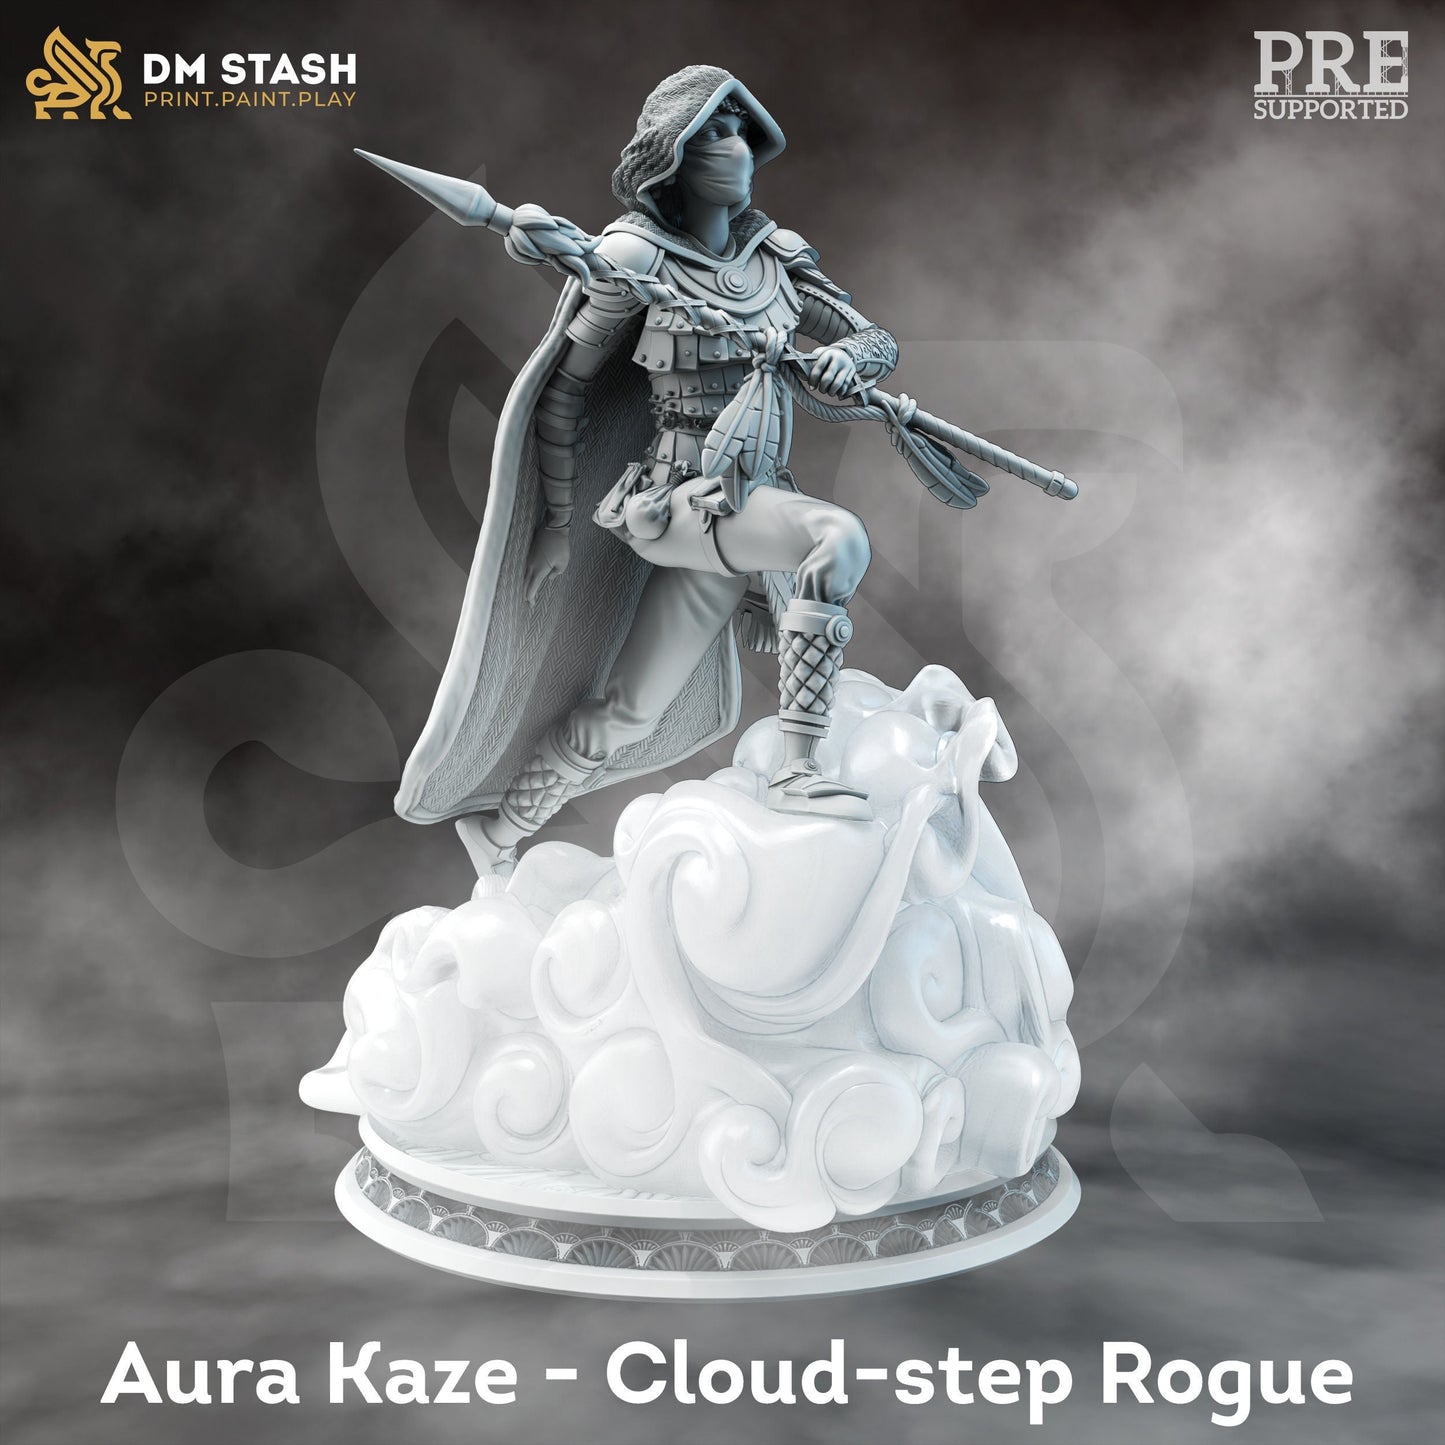 Aura - Cloud-step Rogue by DM Stash